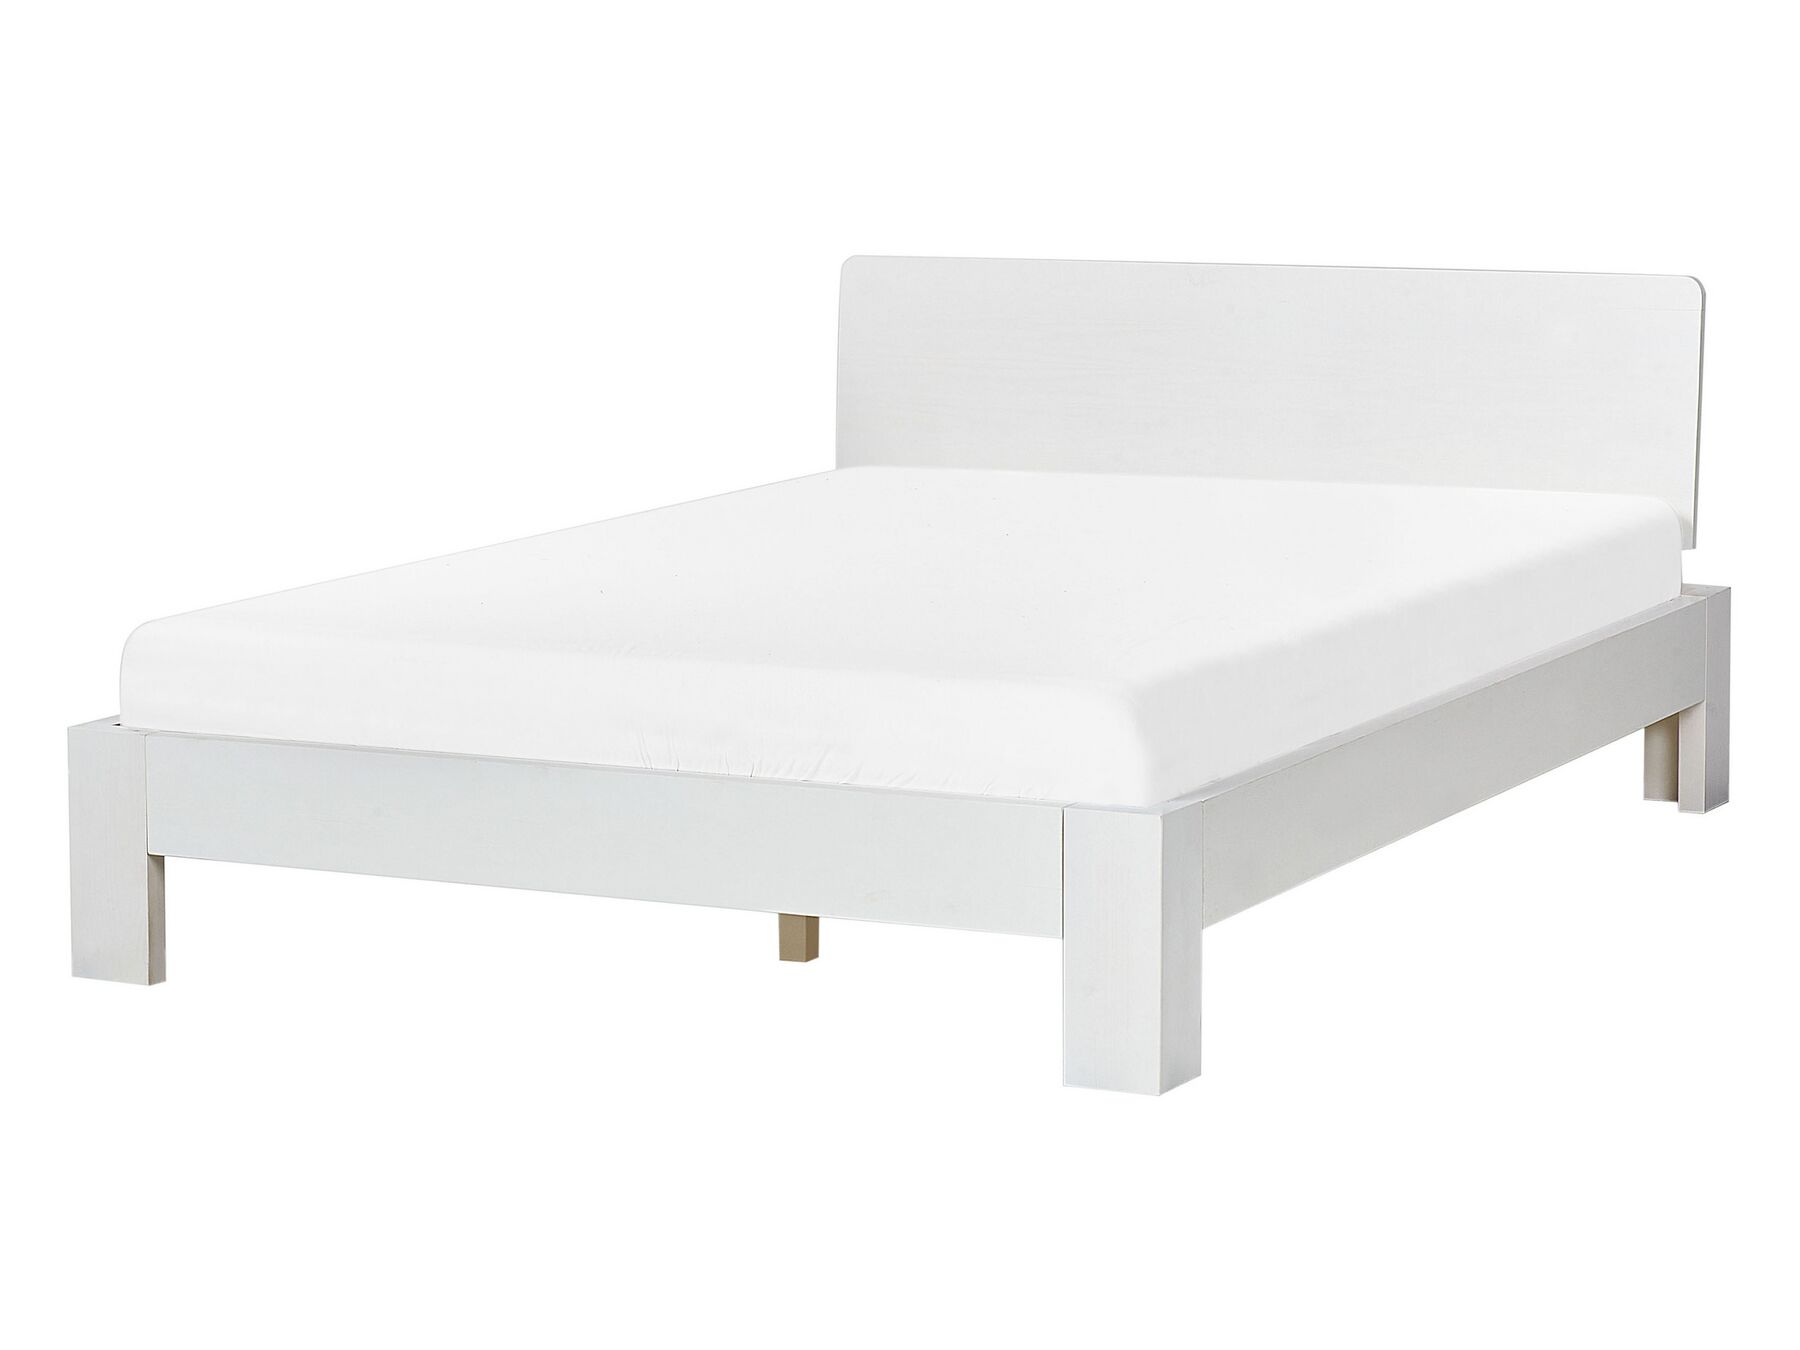 Dřevěná postel 140 x 200 cm bílá ROYAN_925889